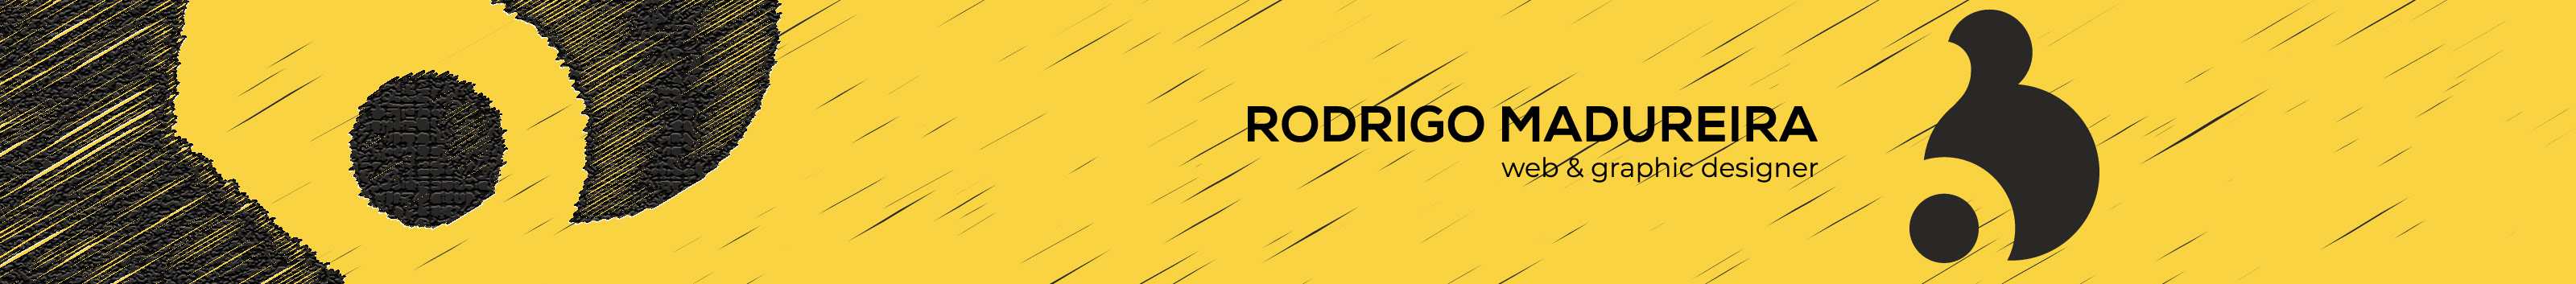 Bannière de profil de Rodrigo Madureira